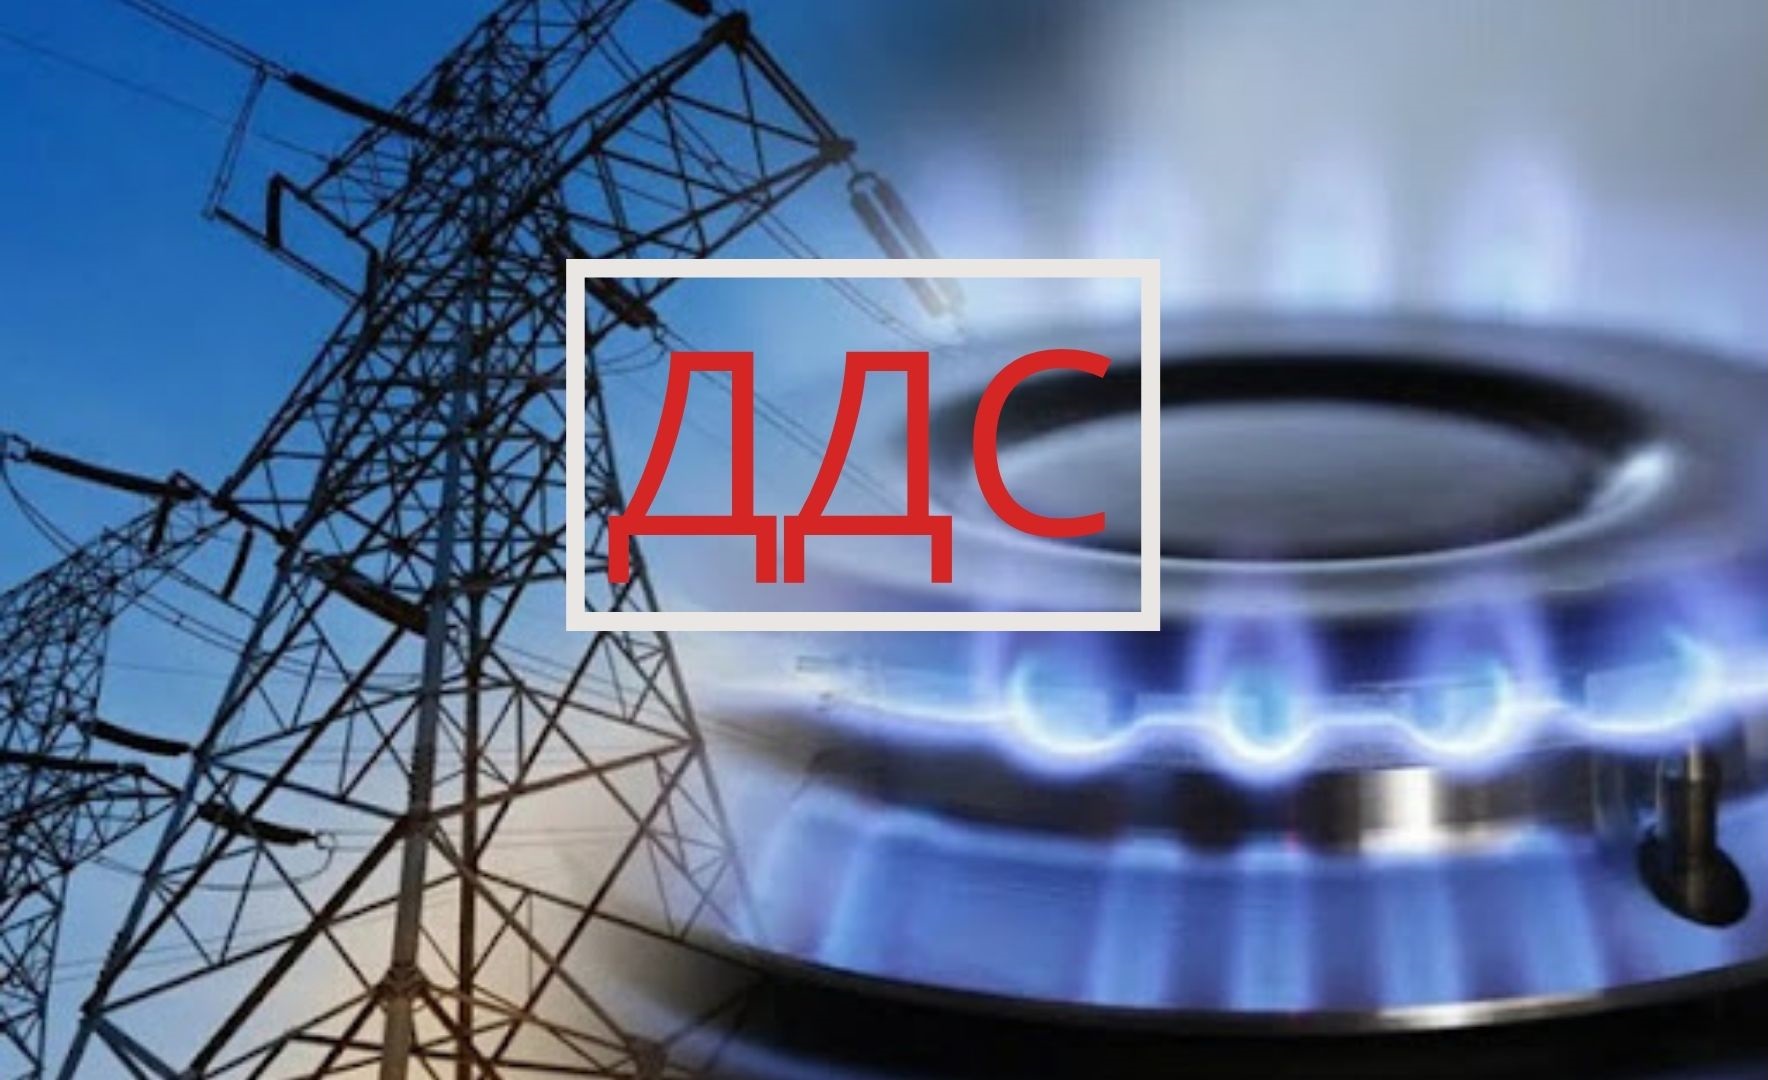 Започва техническо подготвяне на искане за прилагане на намален ДДС за електроеленргия и природен газ